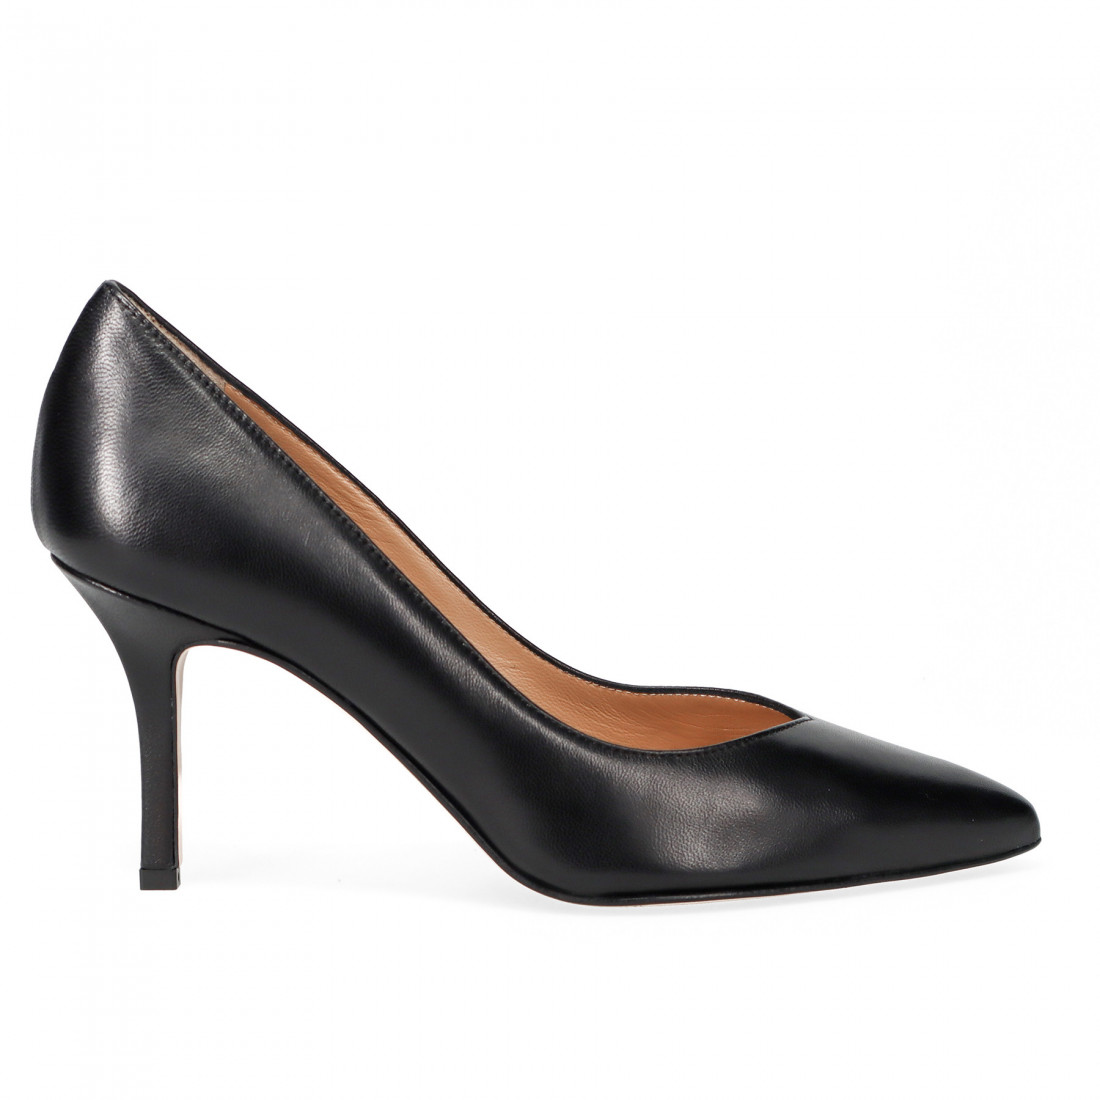 Sangiorgio black pump in soft leather with medium heel